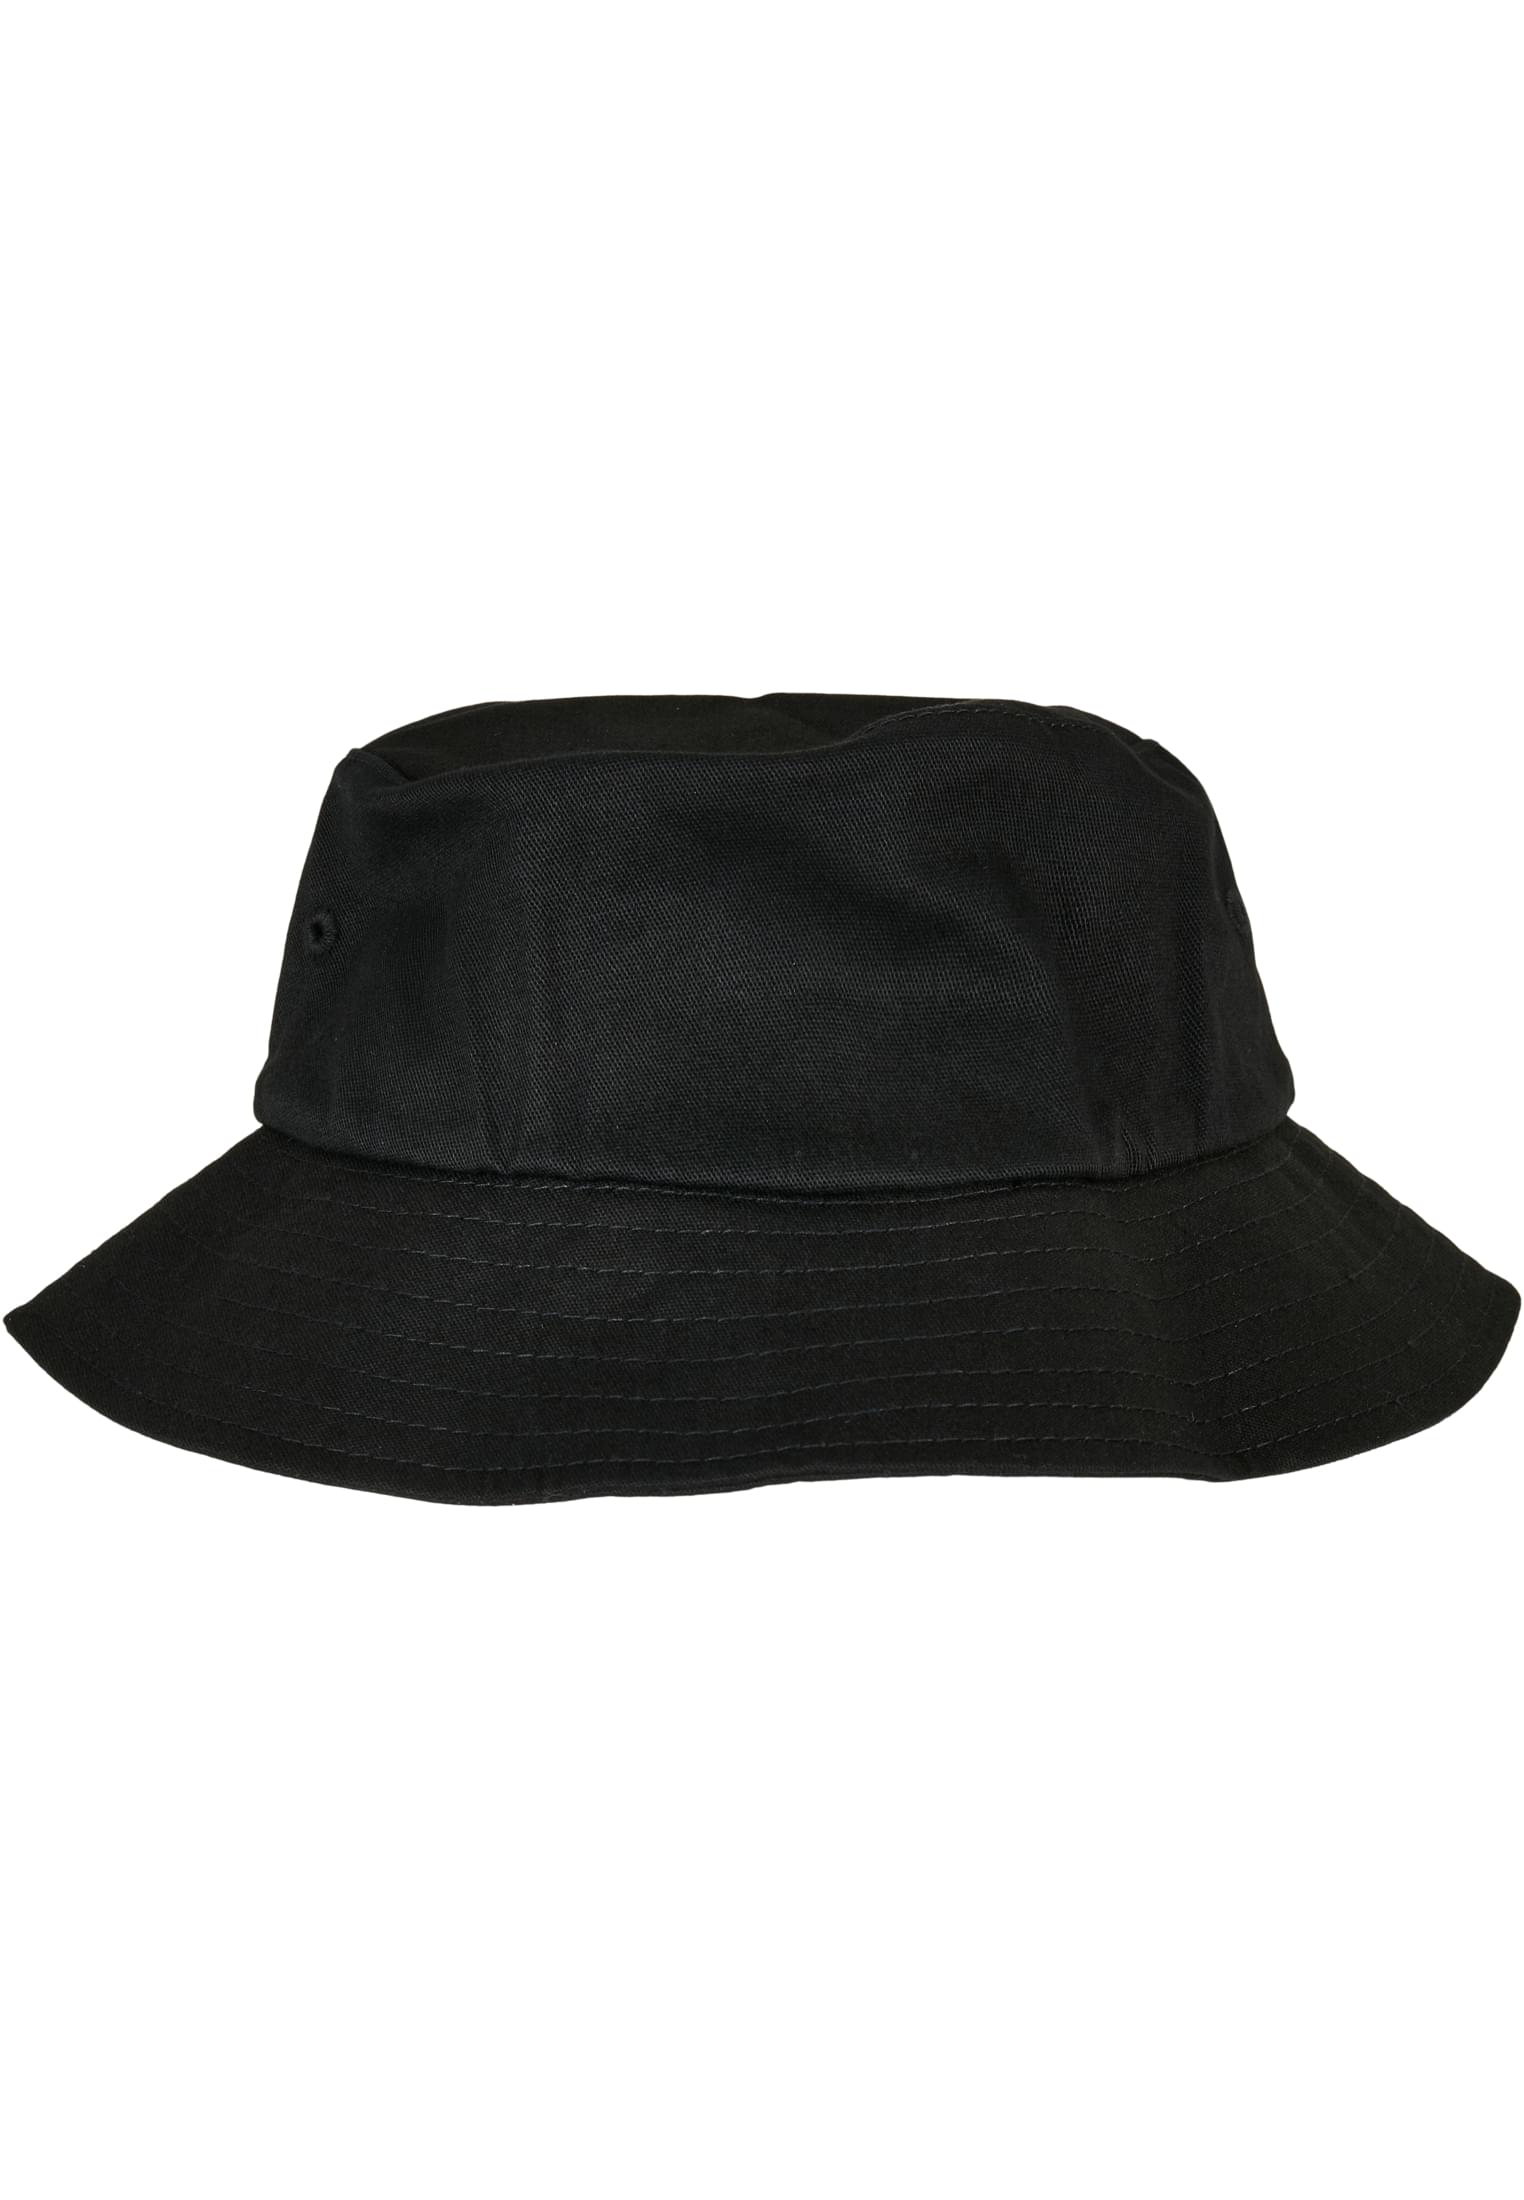 Twill Cotton Hat Flexfit Kids-5003KH Bucket